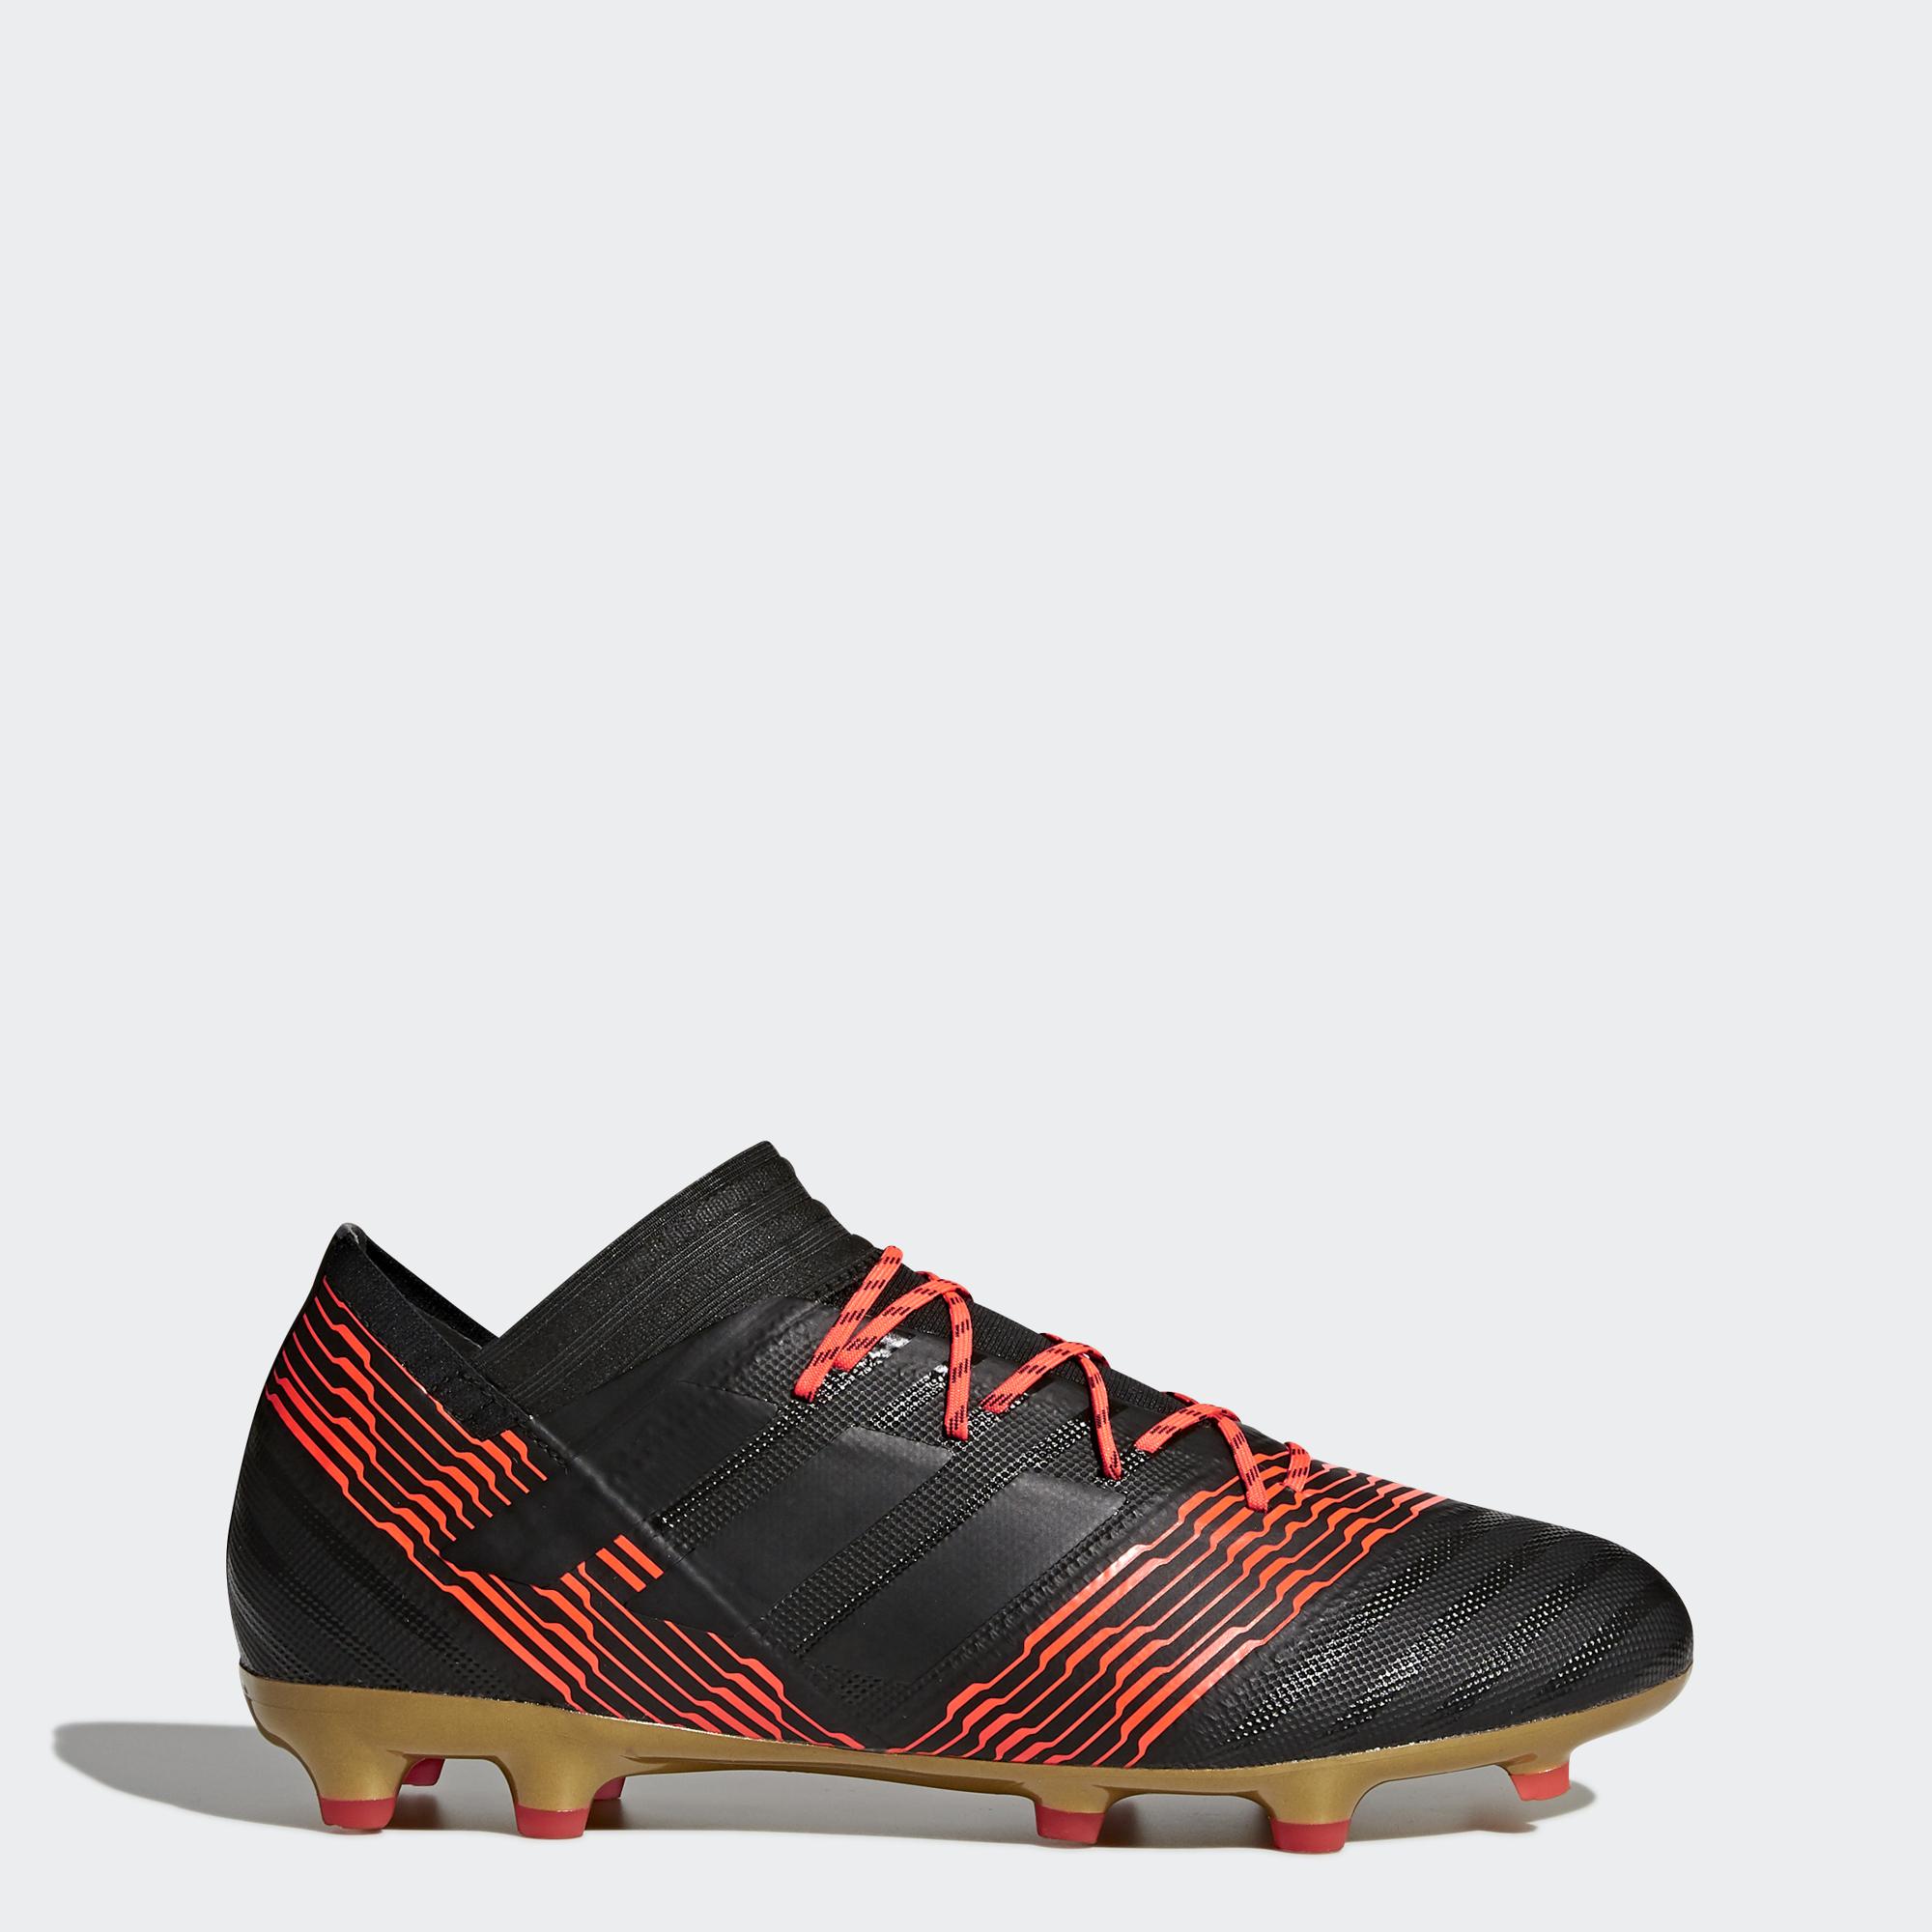 Adidas scarpe calcio calcio adidas  nemeziz 17.2 fg 2018 uomo nero